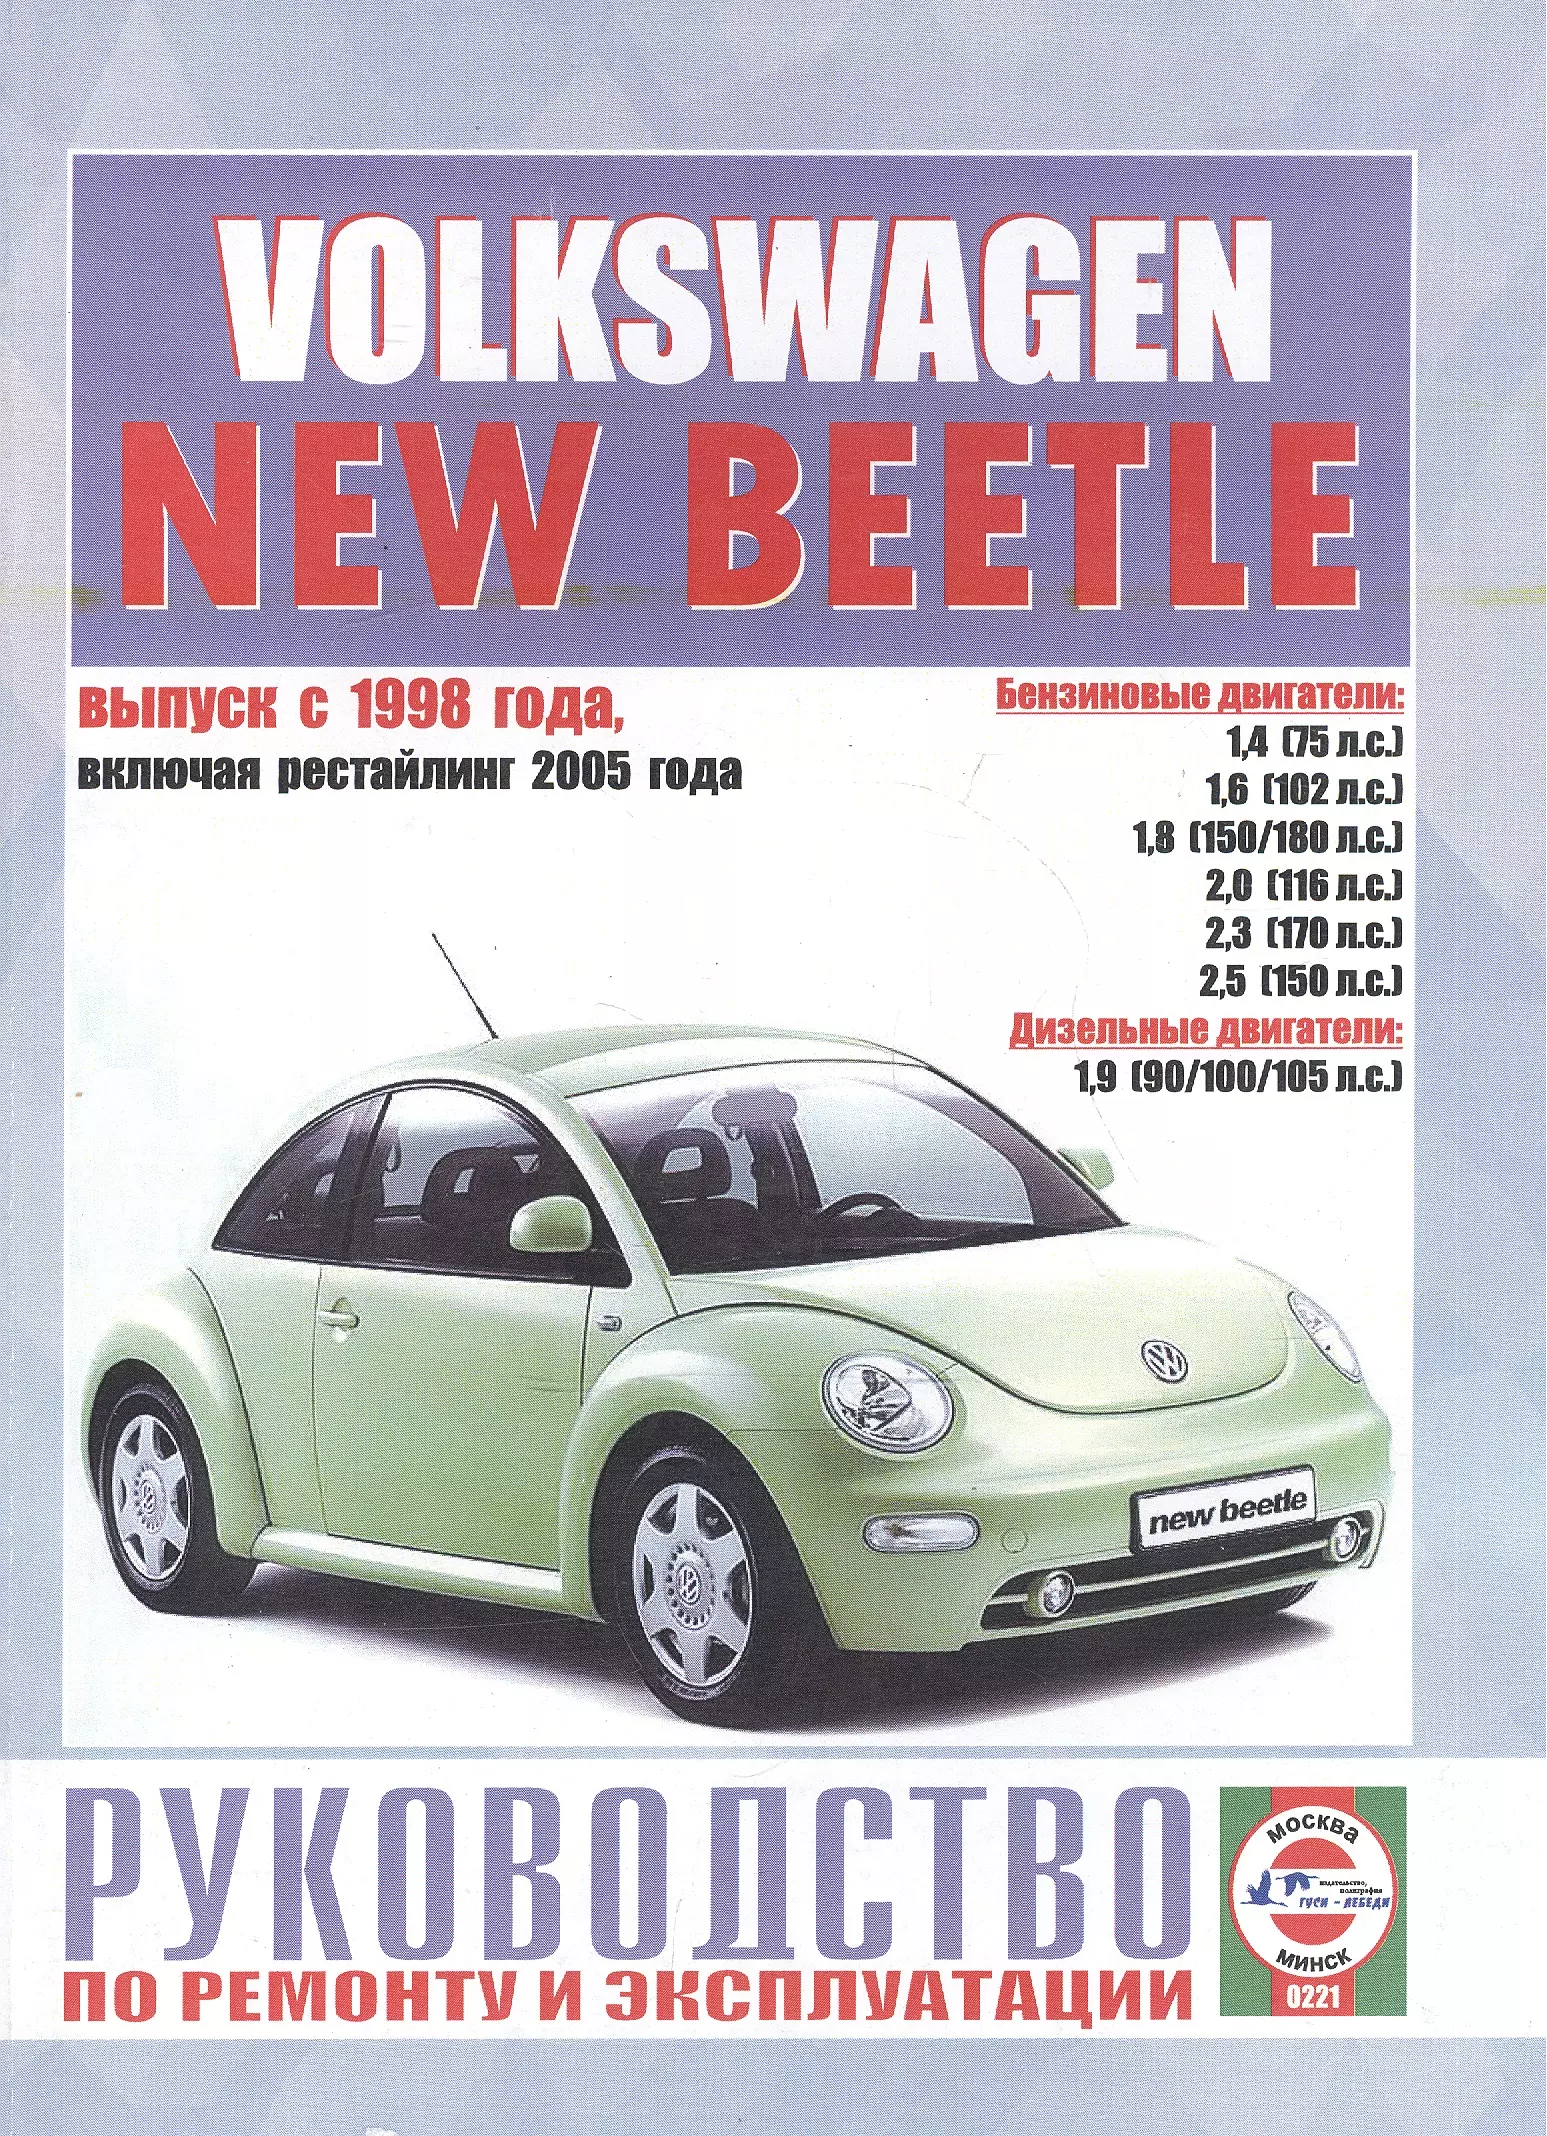 Гусь Сергей Васильевич - Volkswagen New Beetle. Руководство по ремонту и эксплуатации. Бензиновые двигатели. Дизельные двигатели. Выпуск с 1998 года, включая рестайлинг 2005 года